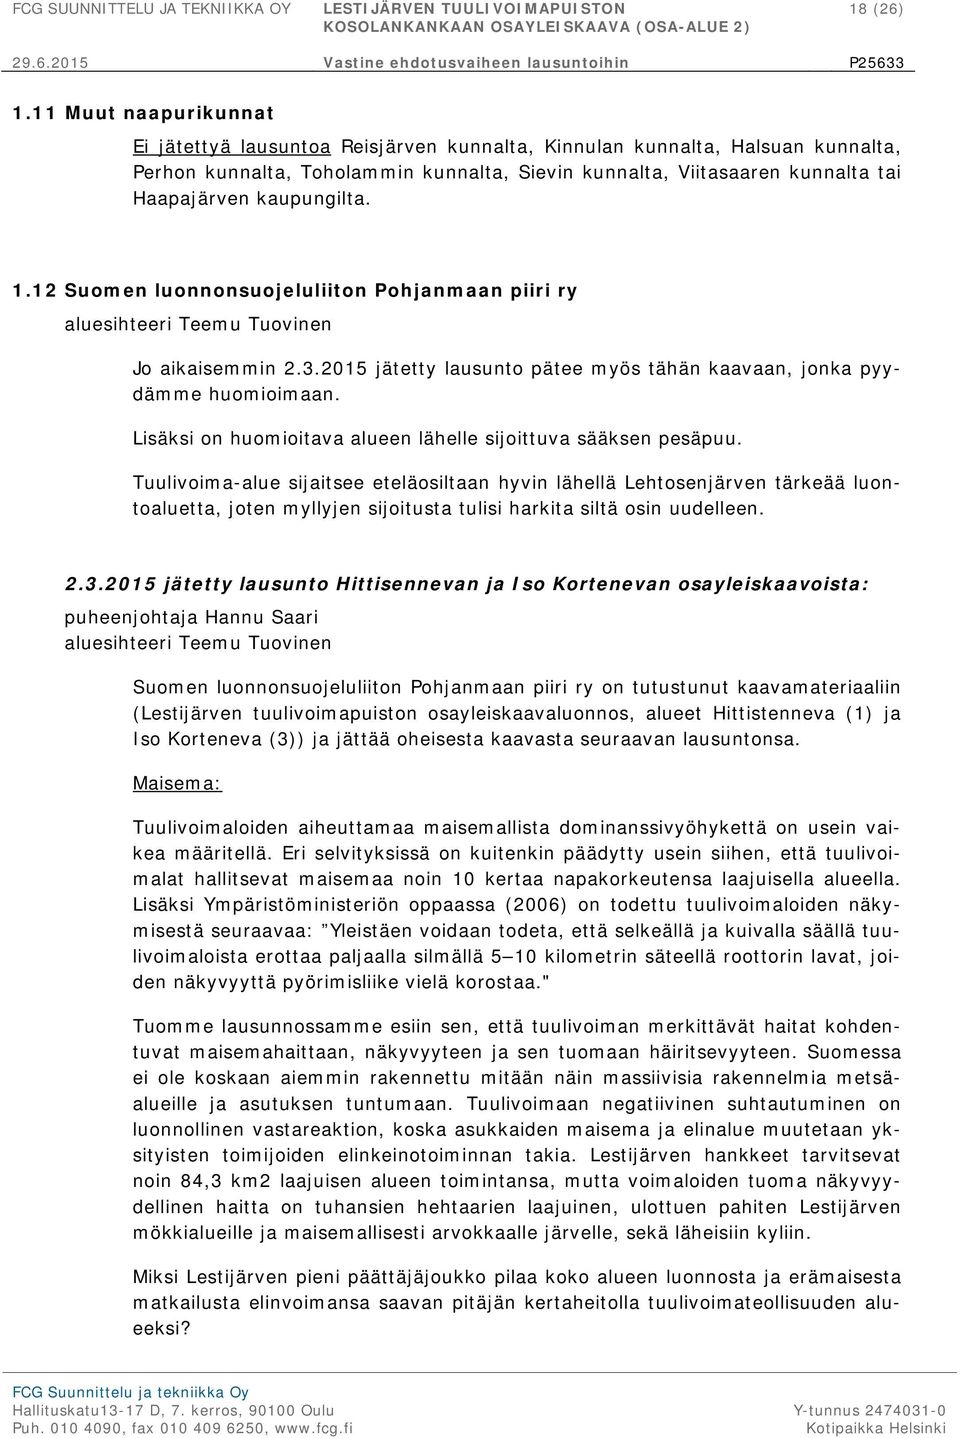 kaupungilta. 1.12 Suomen luonnonsuojeluliiton Pohjanmaan piiri ry aluesihteeri Teemu Tuovinen Jo aikaisemmin 2.3.2015 jätetty lausunto pätee myös tähän kaavaan, jonka pyydämme huomioimaan.